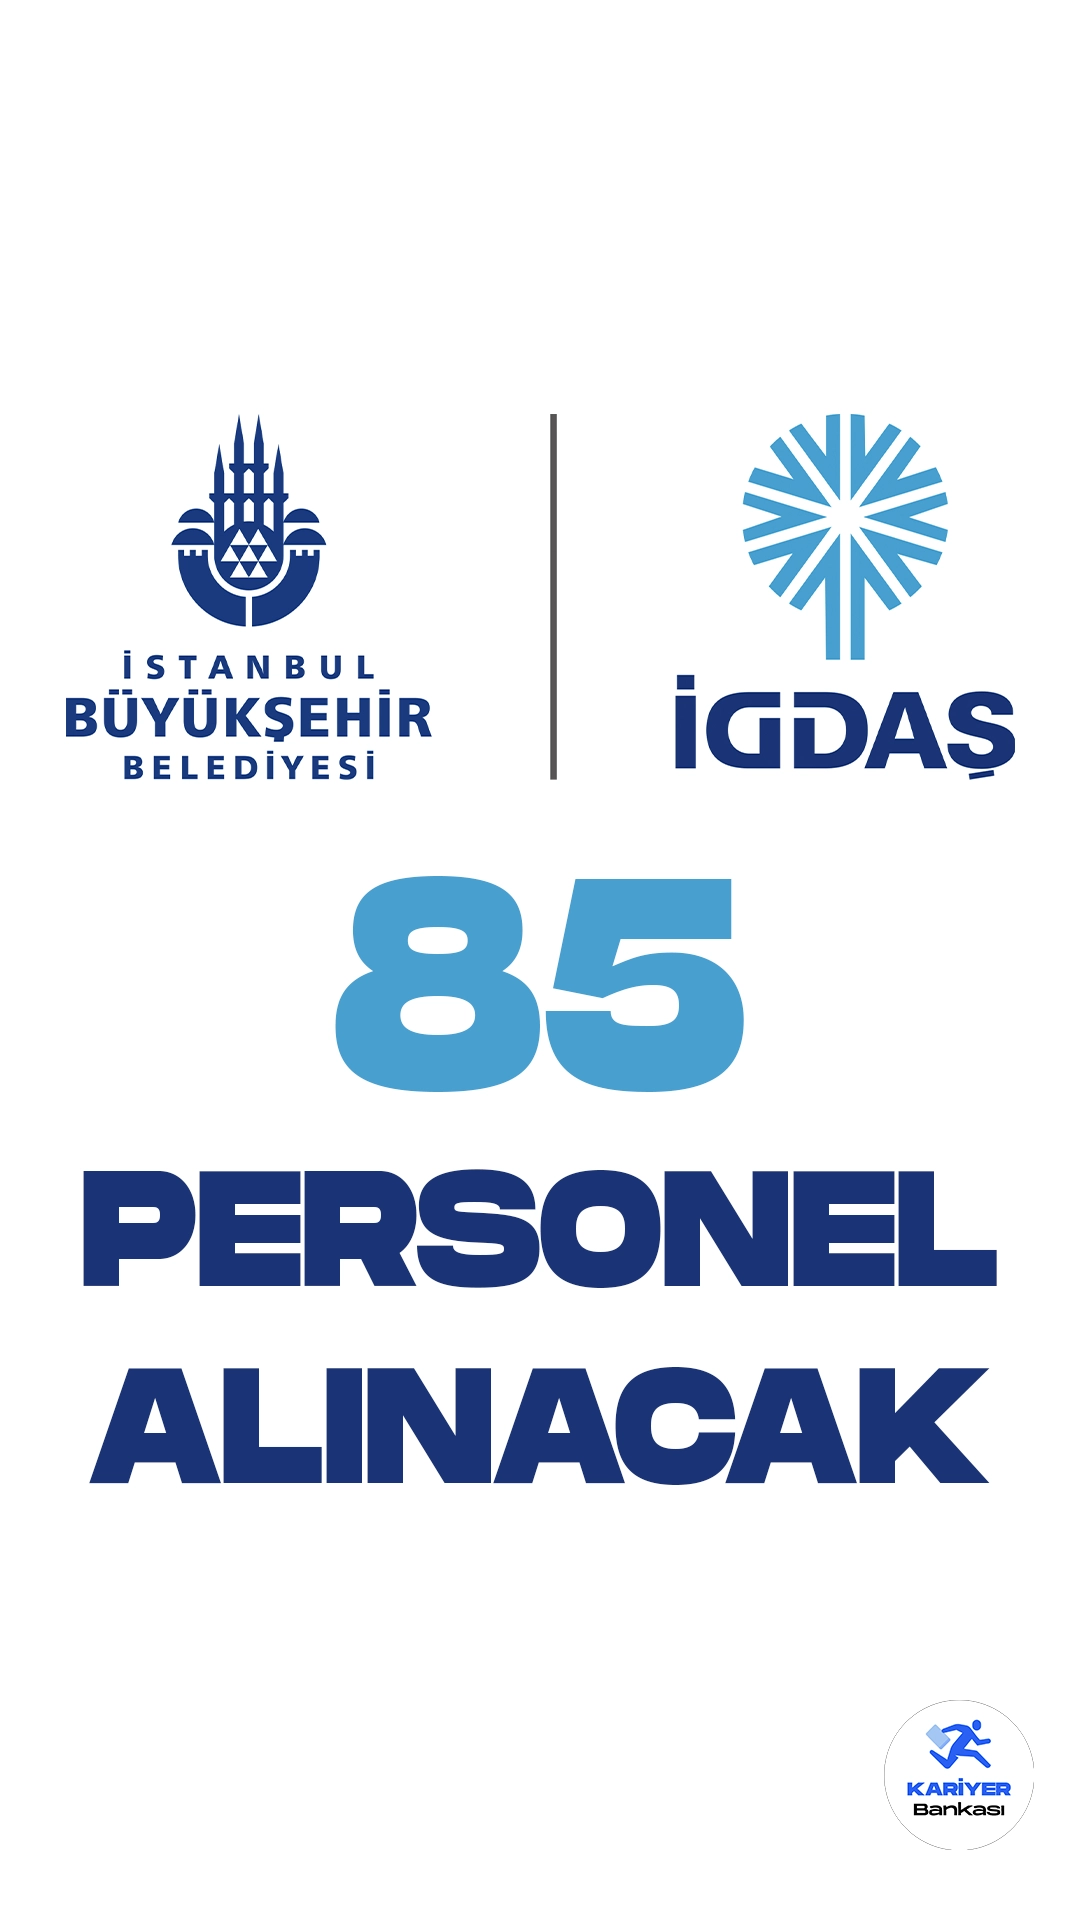 İstanbul Gaz Dağıtım Sanayi Ticaret A.Ş. (İGDAŞ) personel alımı duyurusu yayımlandı. Türkiye İş Kurumu (iŞKUR) resmi sayfasından yayımlanan duyuruya göre, İGDAŞ'a büro personeli, tekniker ve mühendis unvanlarında olmak üzere 85 daimi işçi alımı yapılacak.